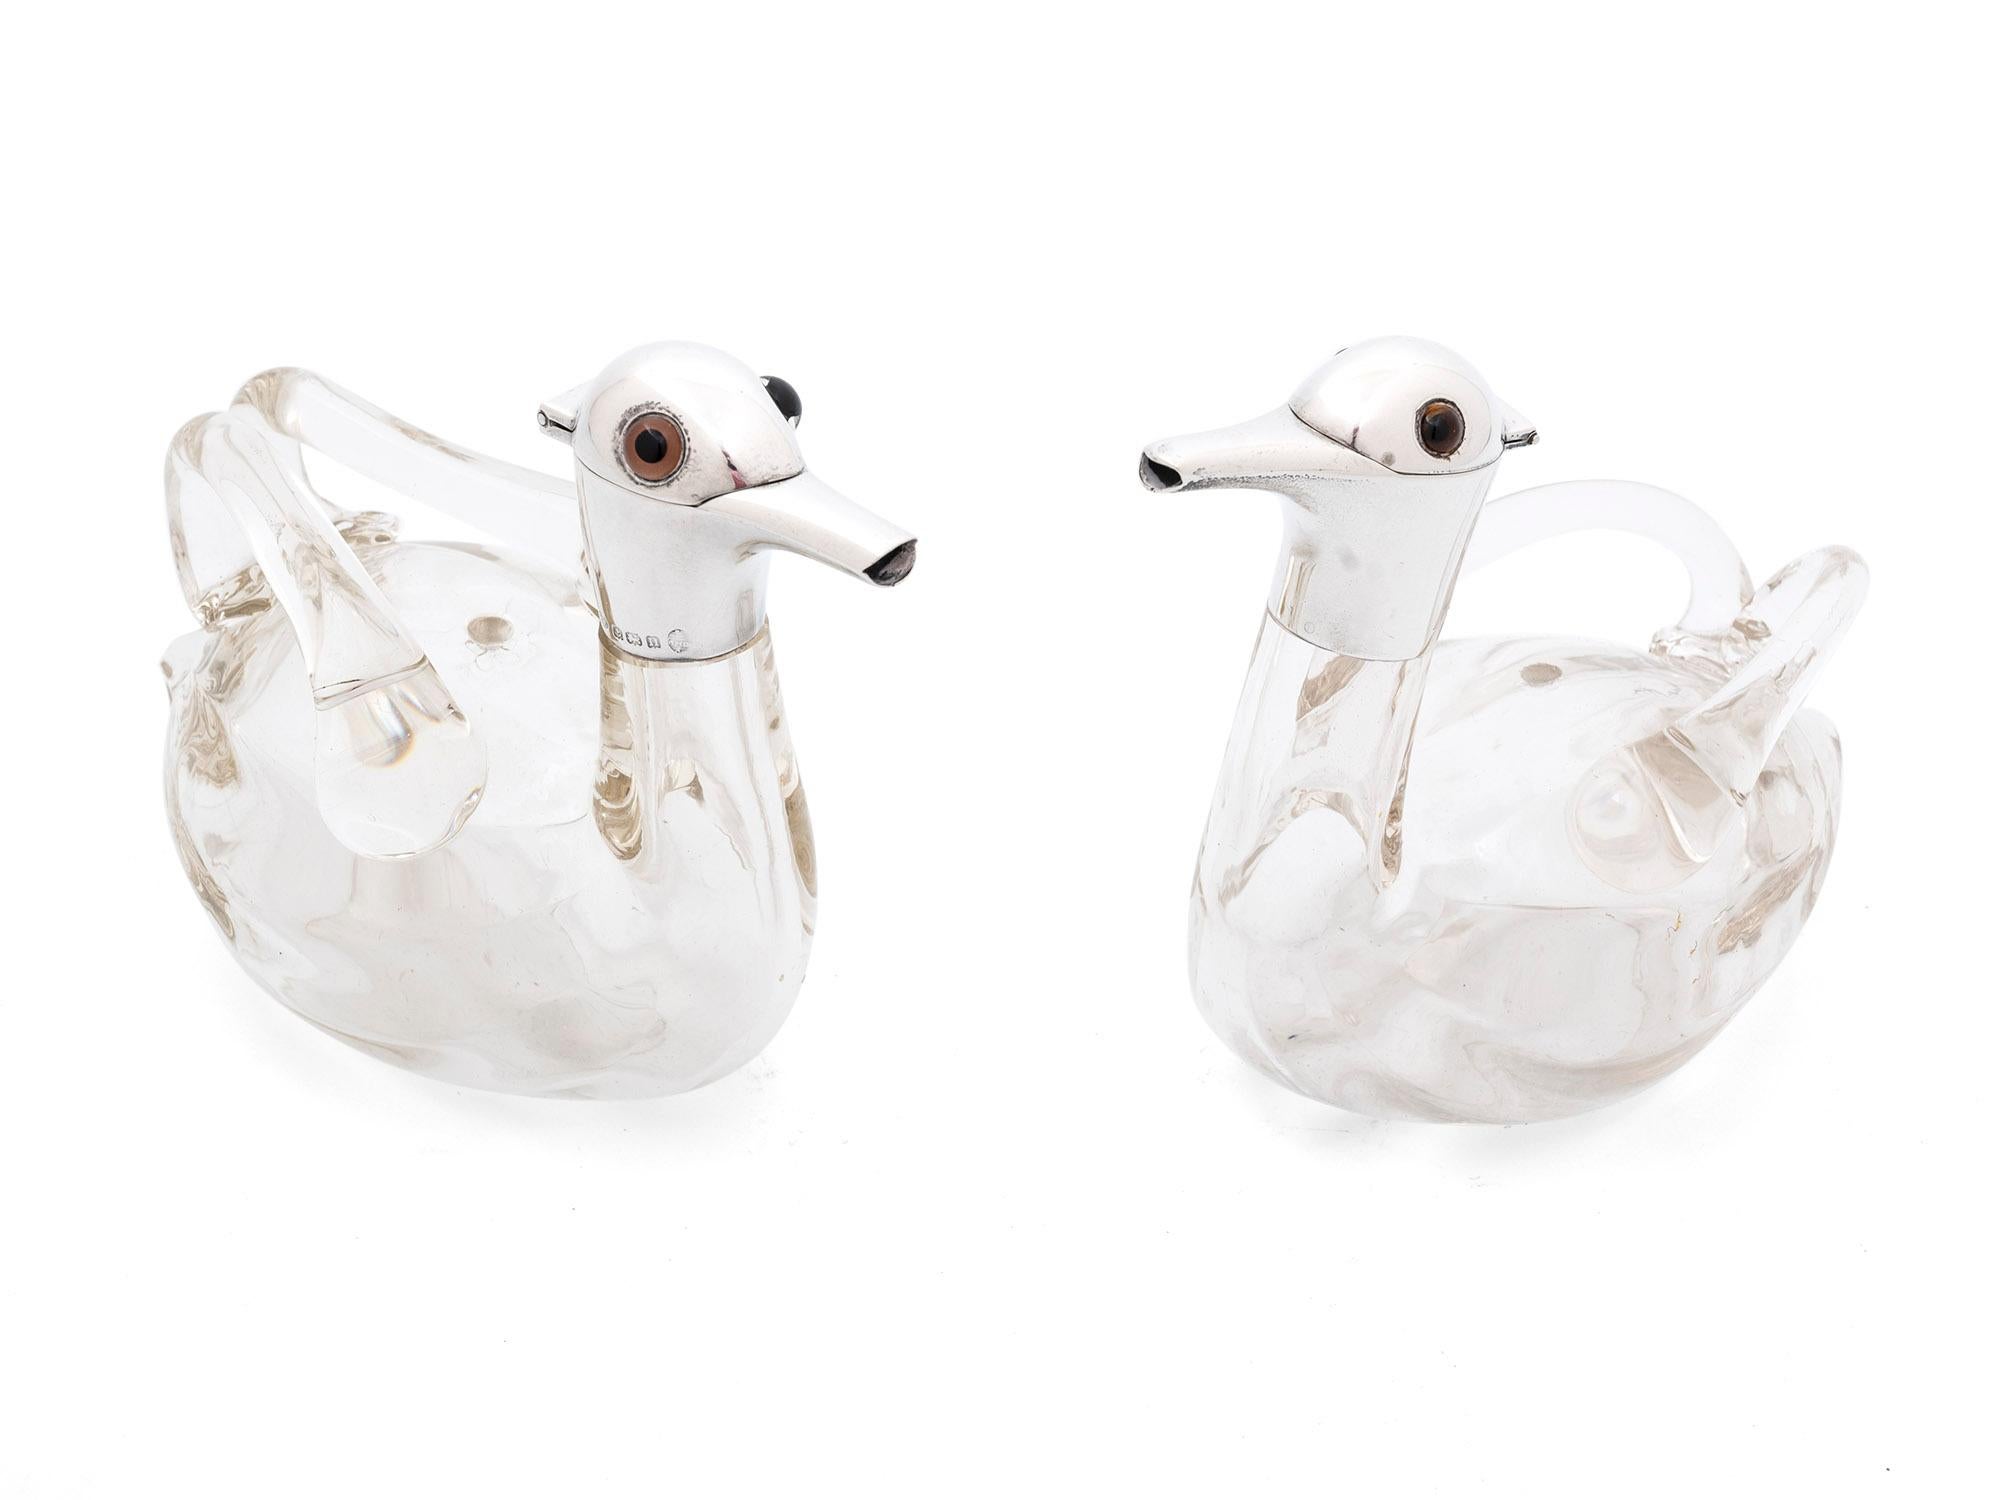 Dieses Zwillingspaar gläserner Entenkaraffen wurde für die Aufbewahrung von Likör verwendet. Mit ihren glänzenden Sterling-Silberkappen sind diese charmanten kleinen Enten-Dekanter mit einigen schönen Eigenschaften ausgestattet.

Jeder Dekanter hat